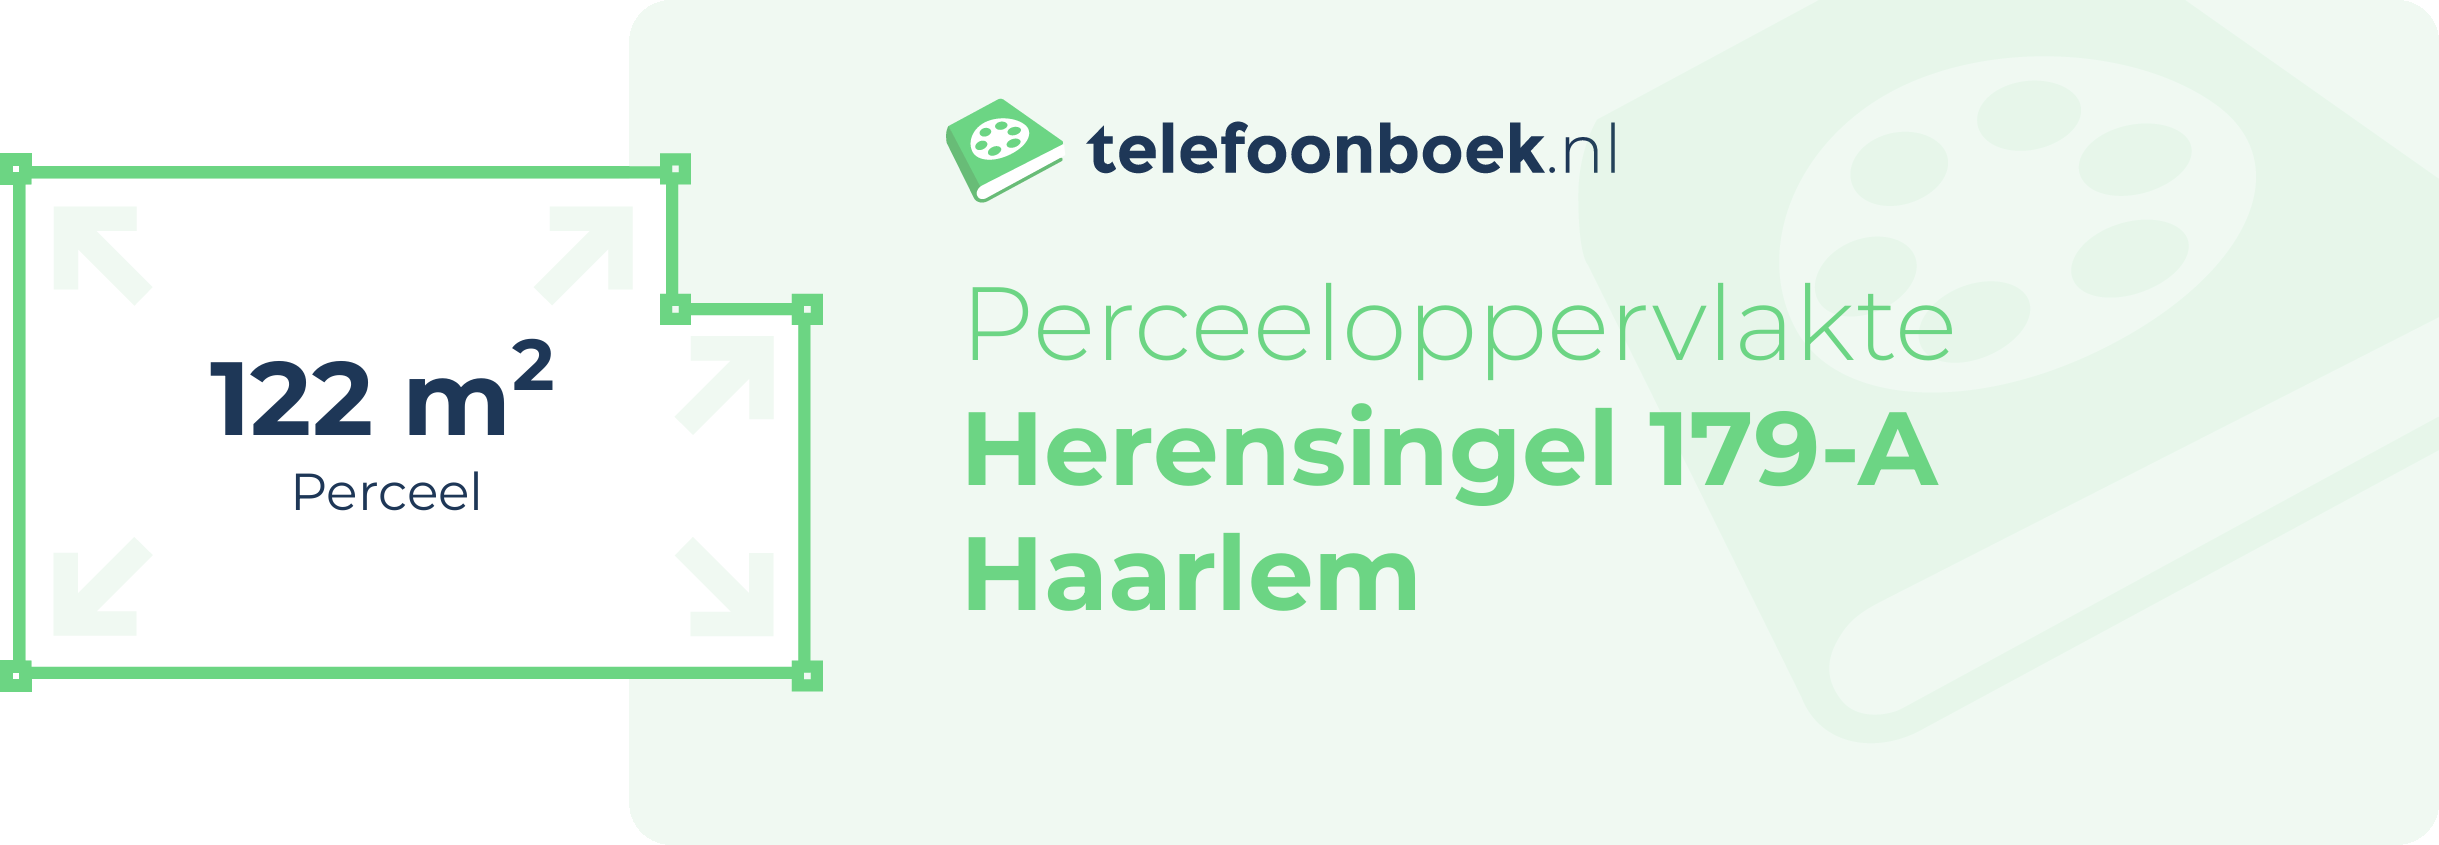 Perceeloppervlakte Herensingel 179-A Haarlem